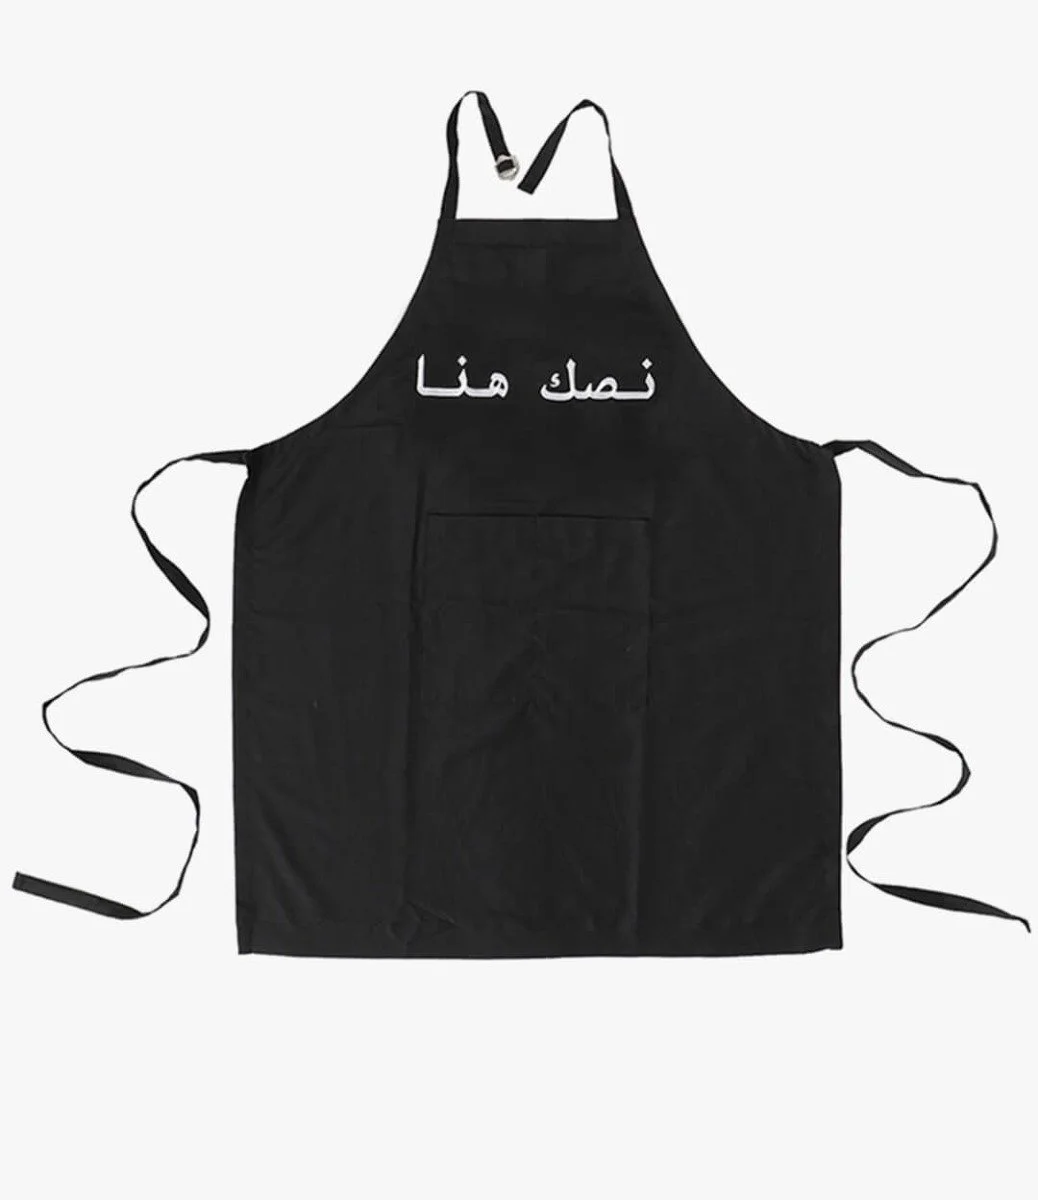 مريلة مطبخ مطرزة بالحروف العربية